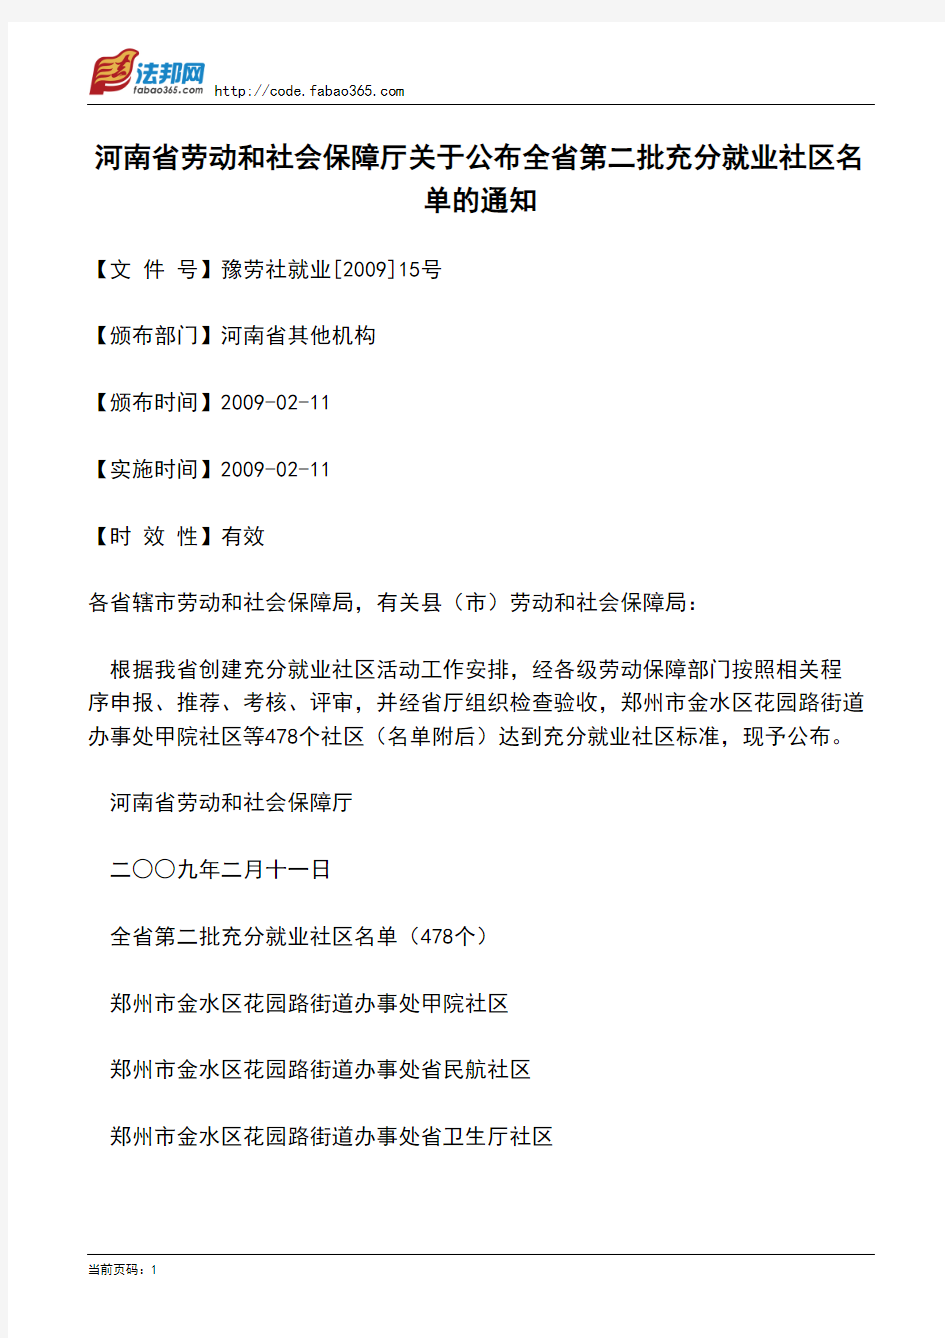 河南省劳动和社会保障厅关于公布全省第二批充分就业社区名单的通知